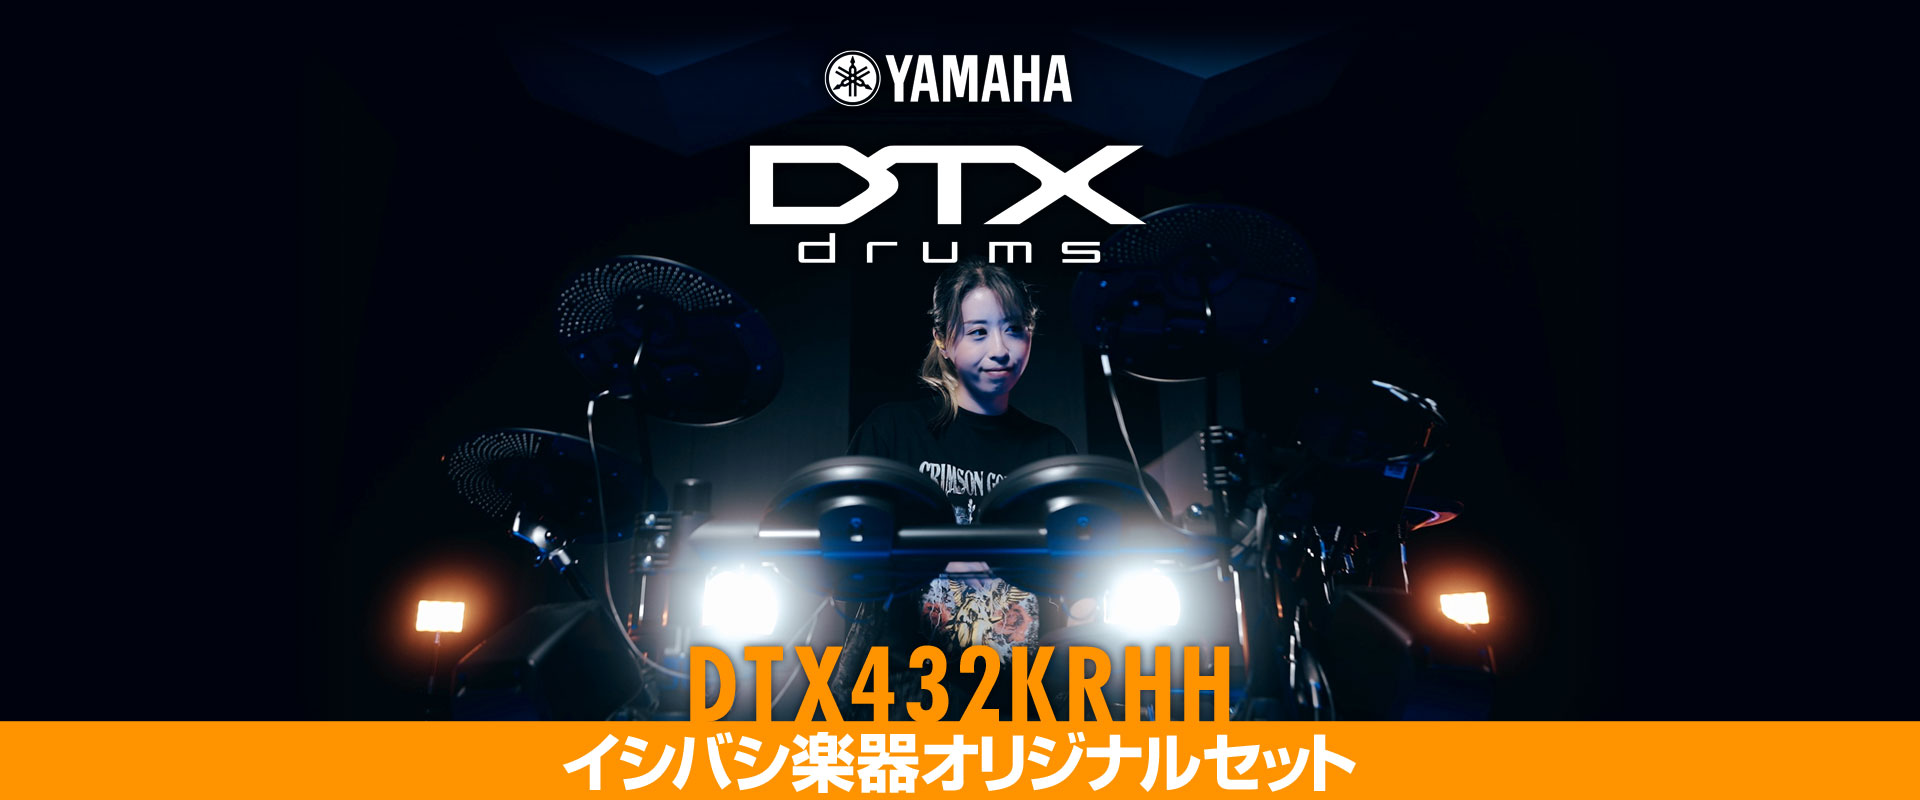 ドラムが上手くなる電子ドラムDTX402シリーズ、リアルハイハットをセットしたこだわりのイシバシオリジナルセット「DTX432KRHH」発売